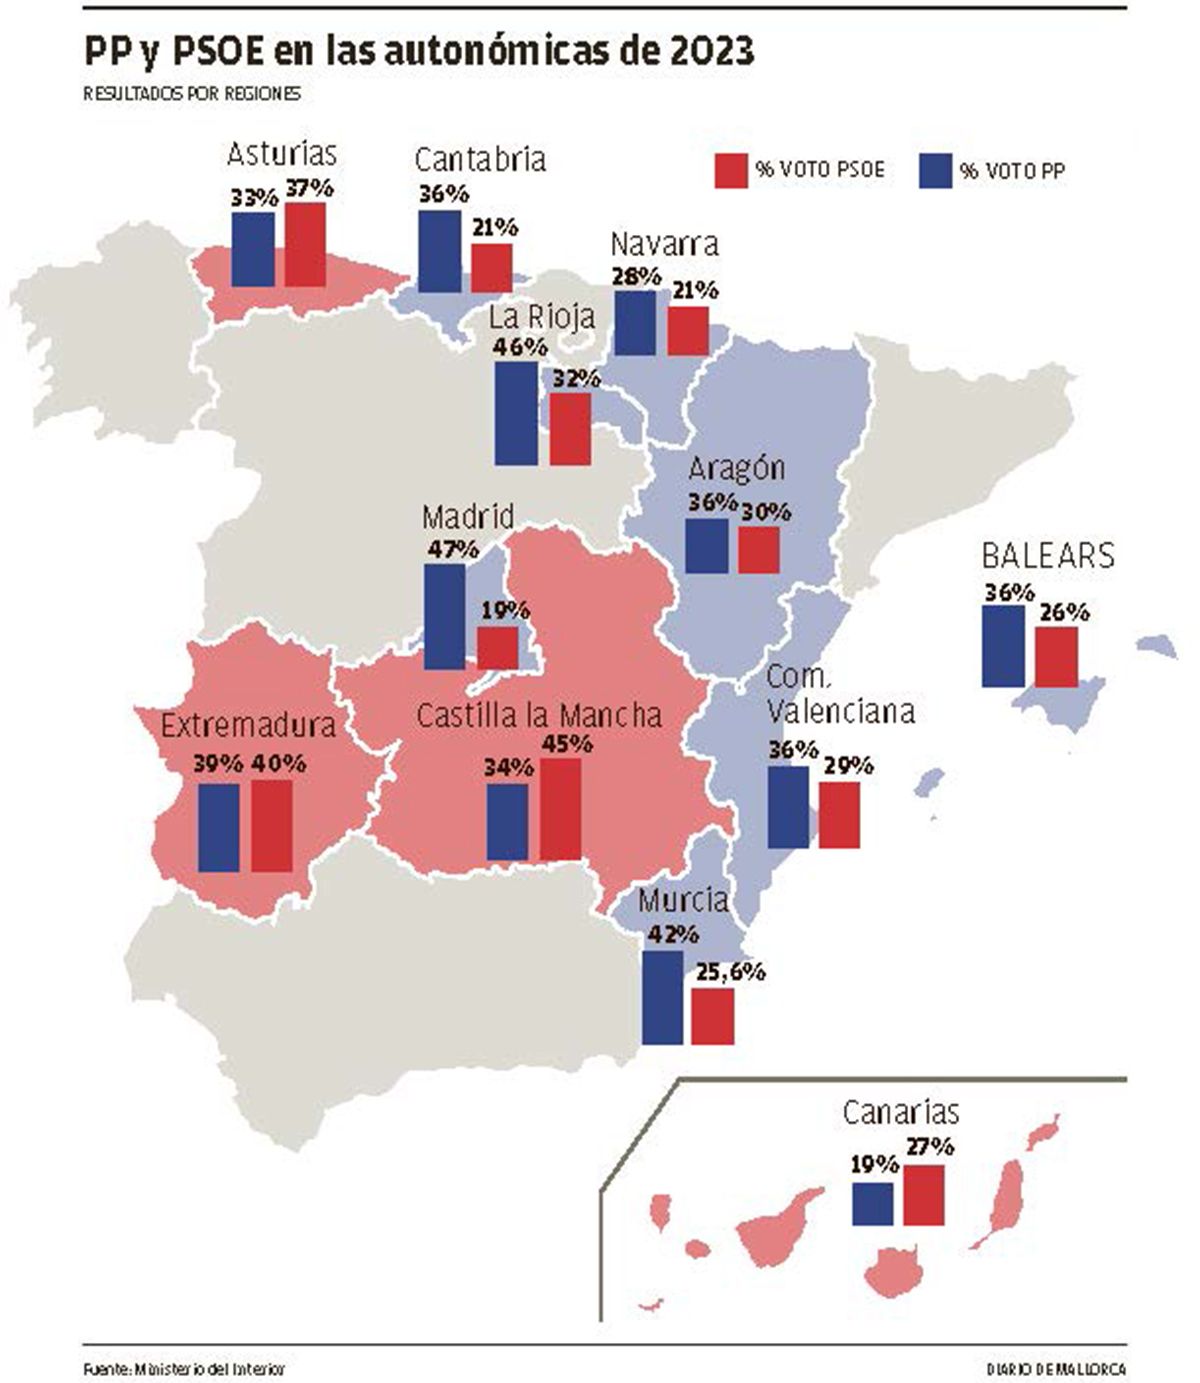 PP y PSOE en las autonómicas de 2023, resultados por regiones